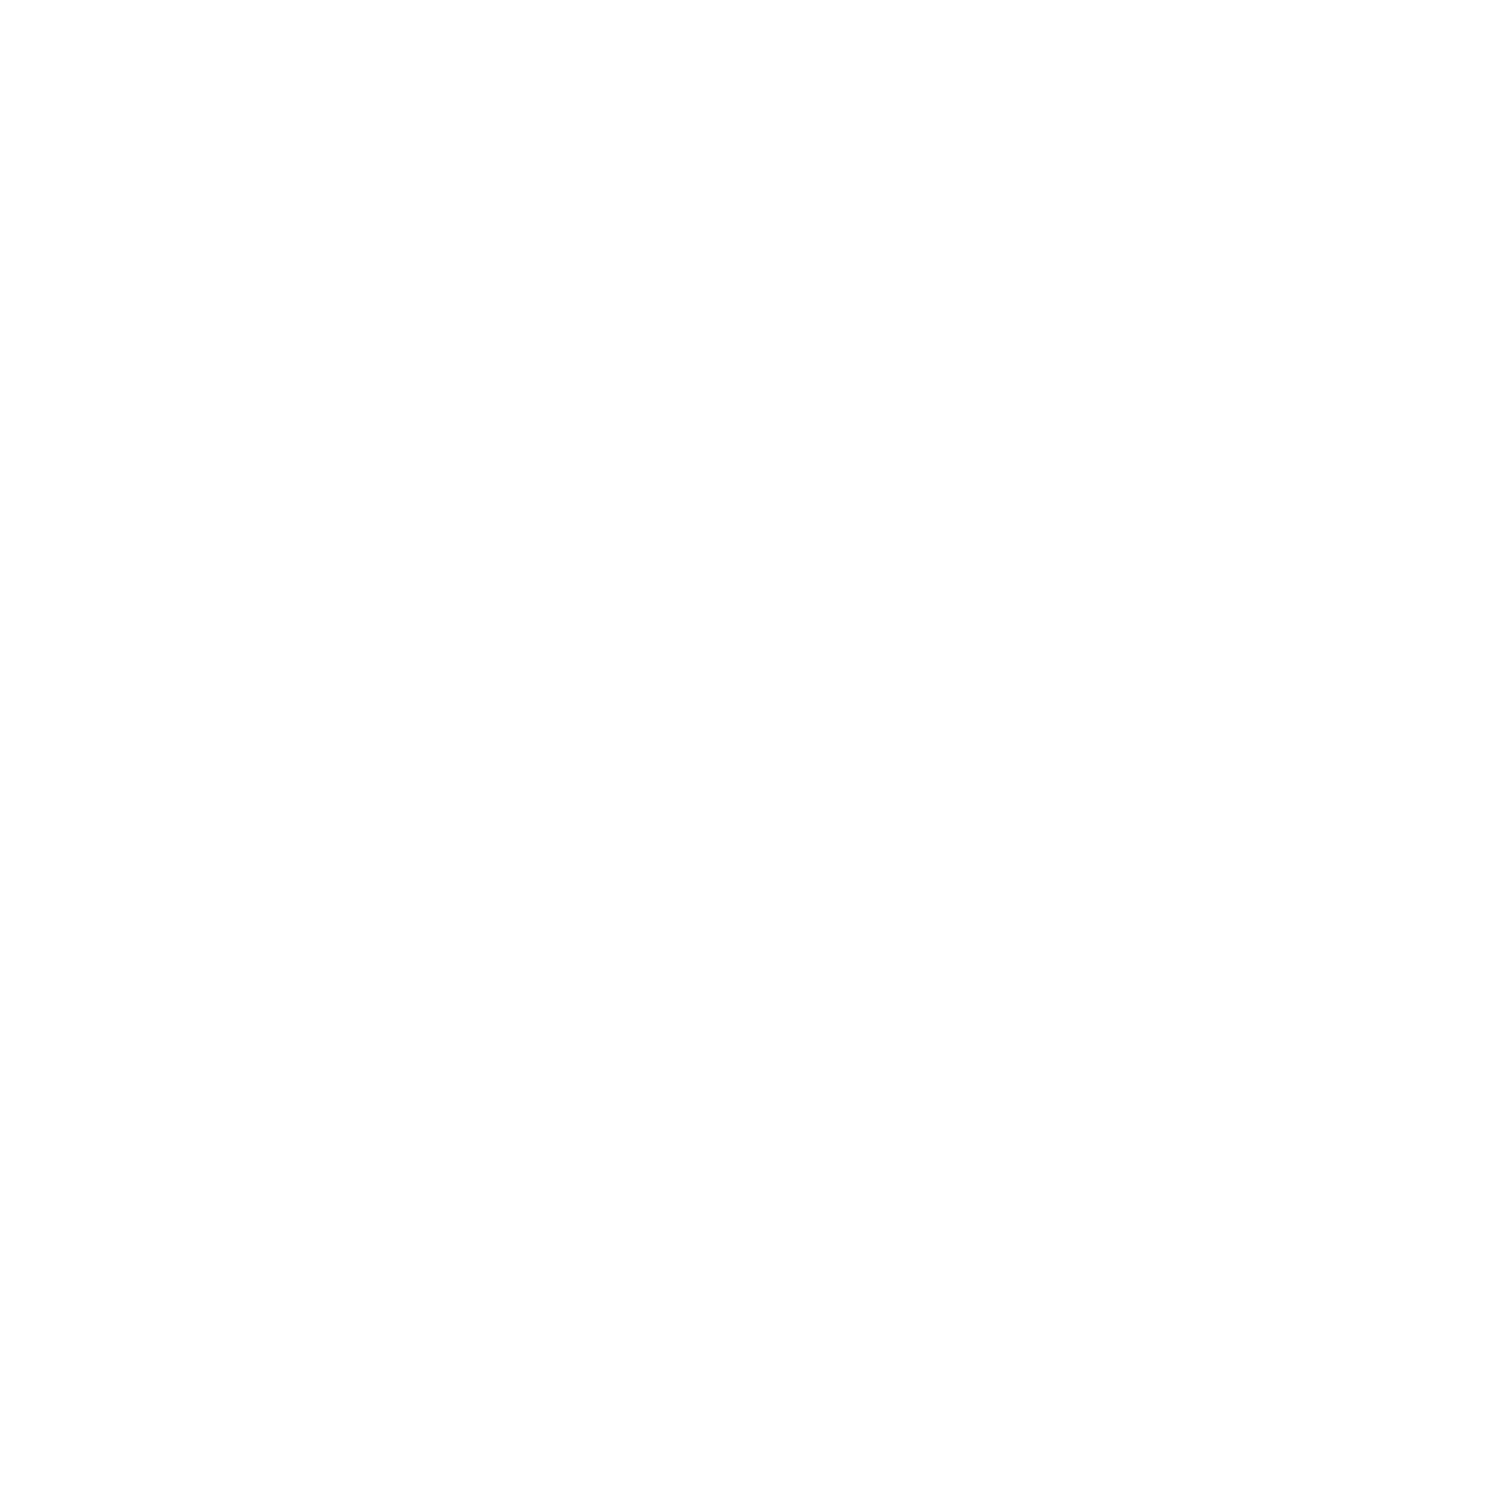 Outward Bound Dog Services